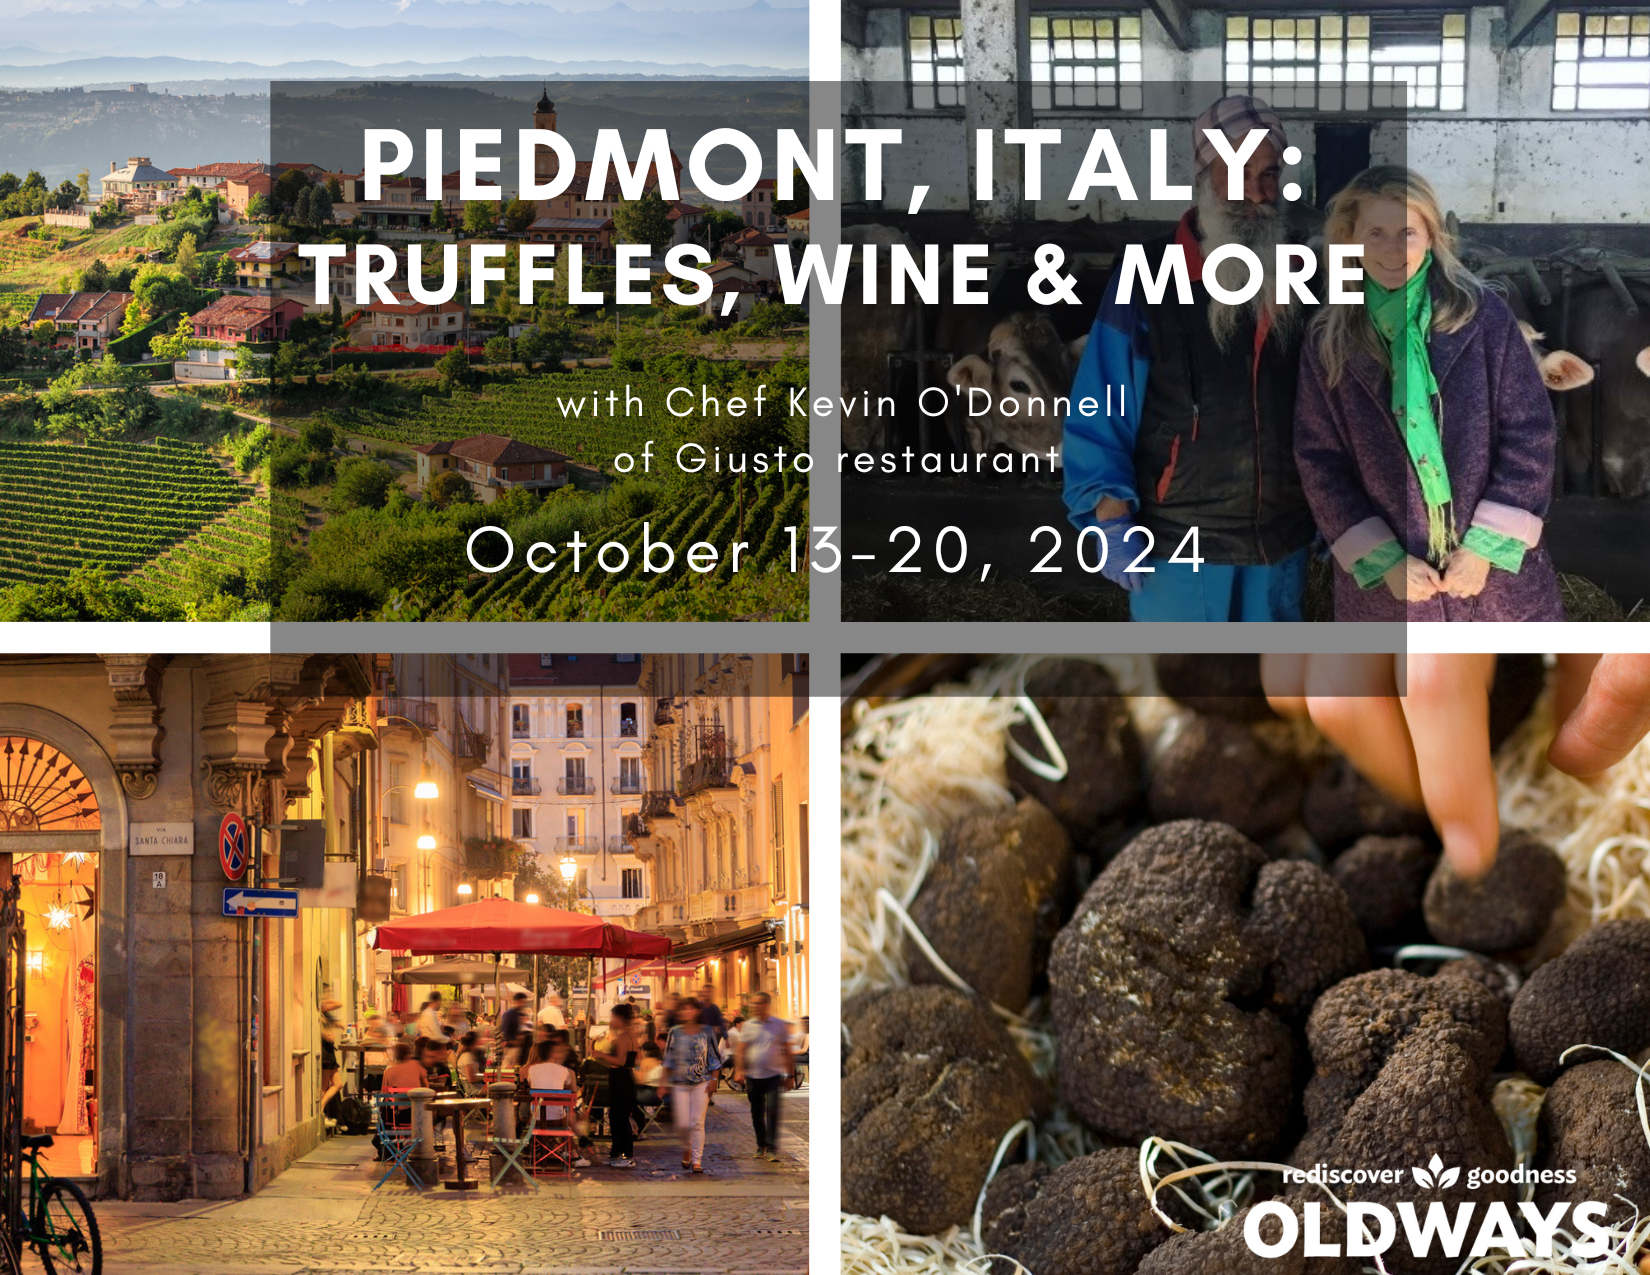 Segui le tue papille gustative dal ristorante Giusto di Newport al Piemonte italiano